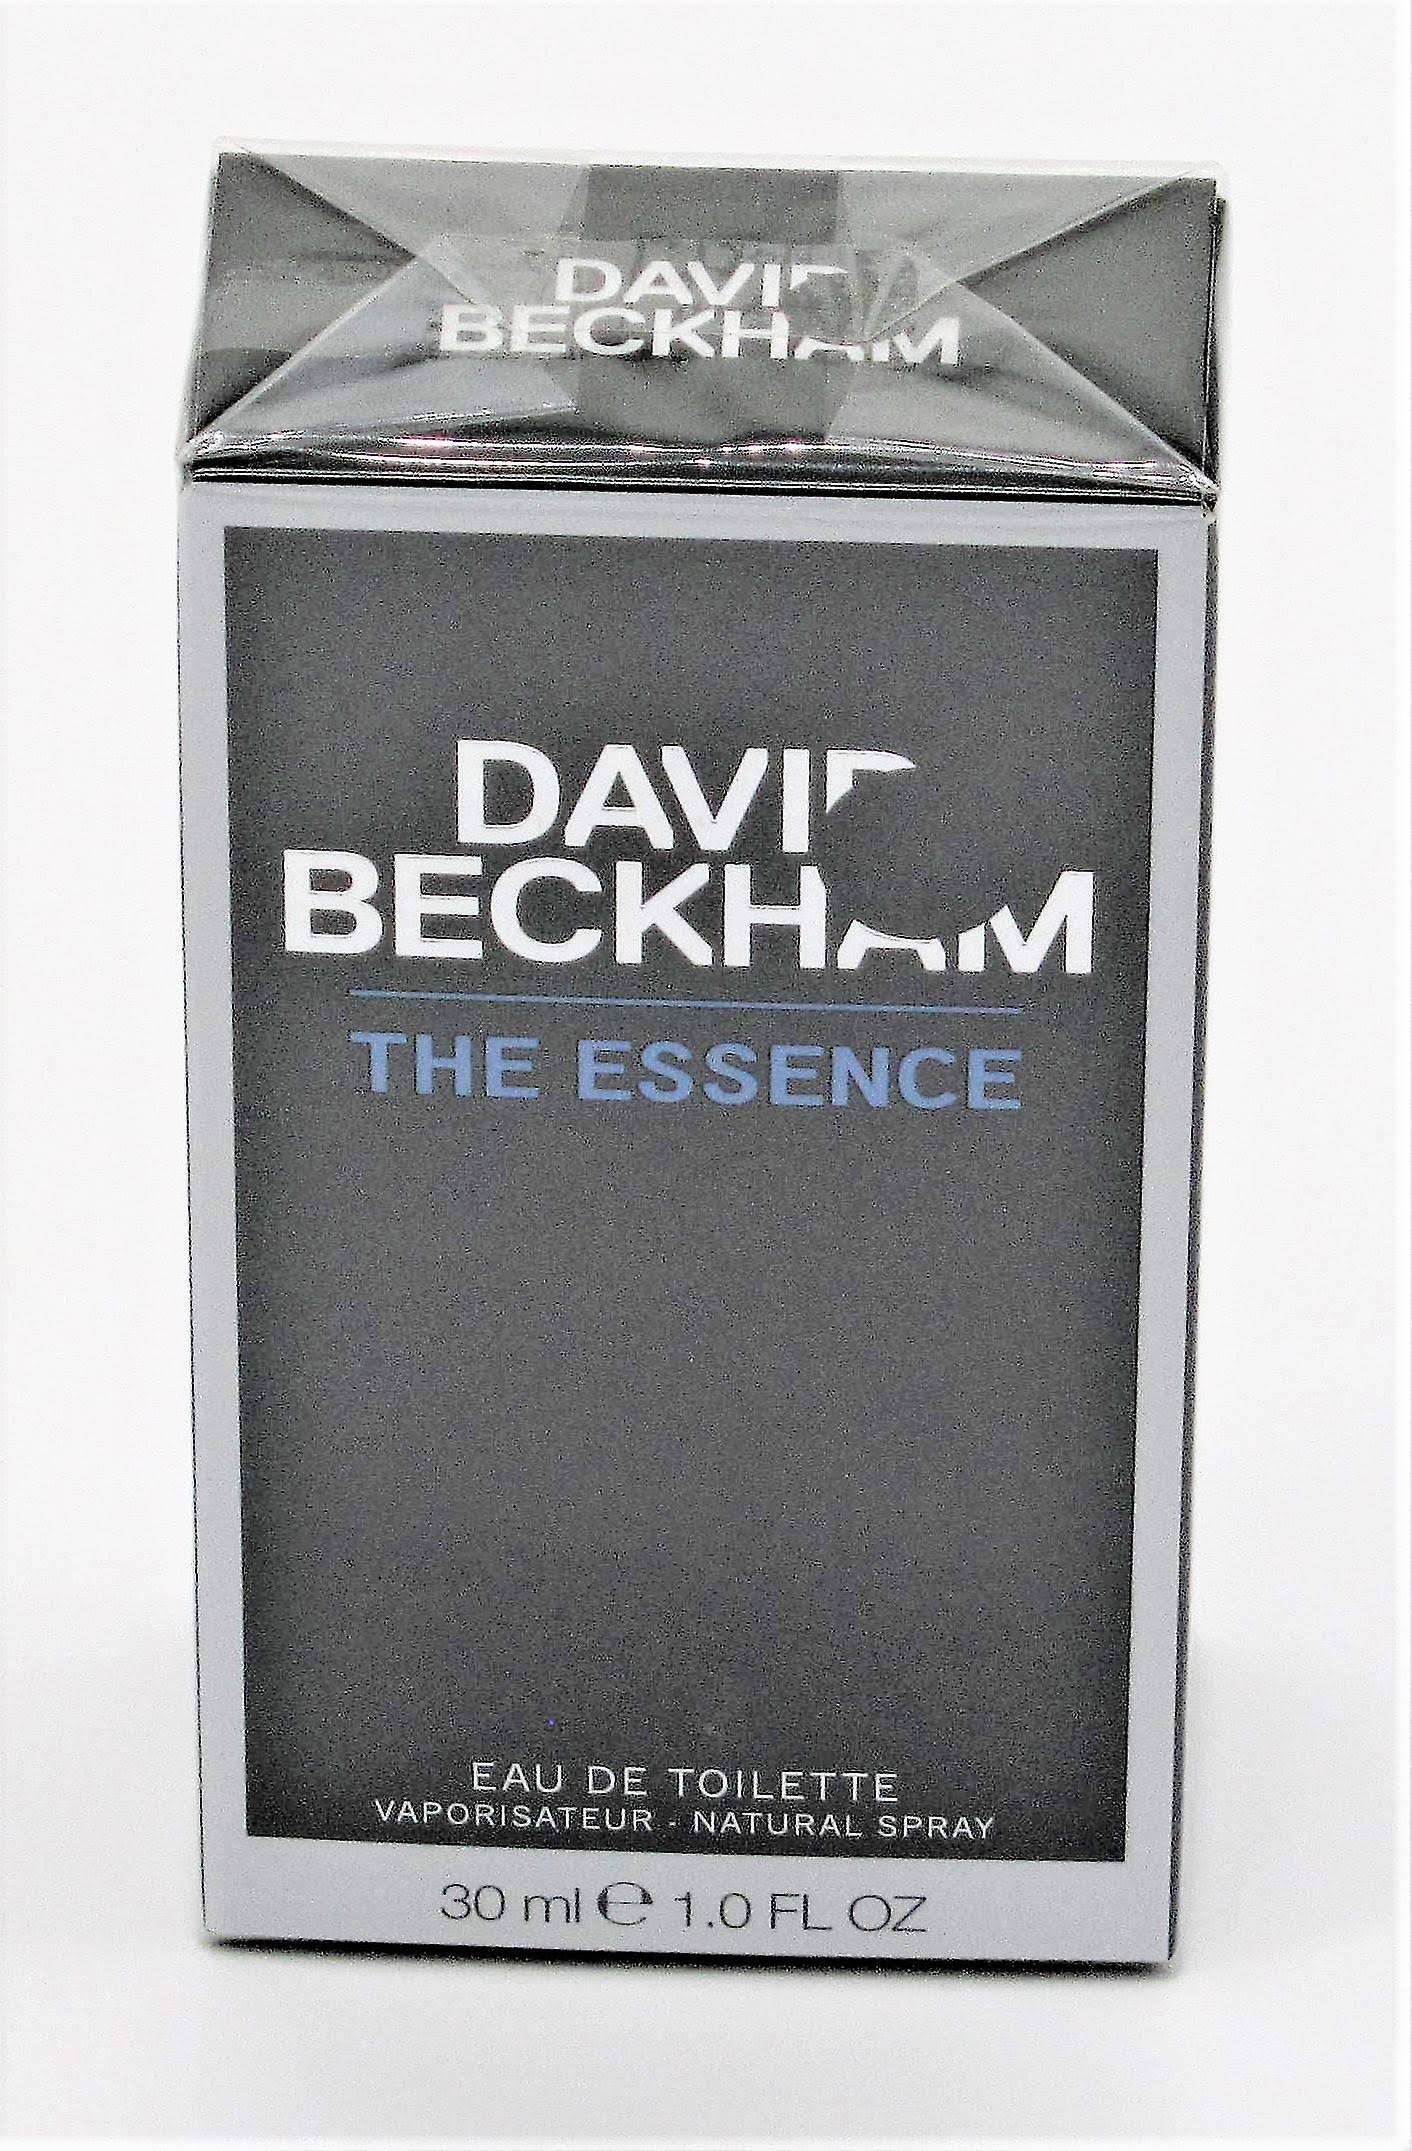 Essence by David Beckham Eau de Toilette Men's Spray Cologne - 1oz